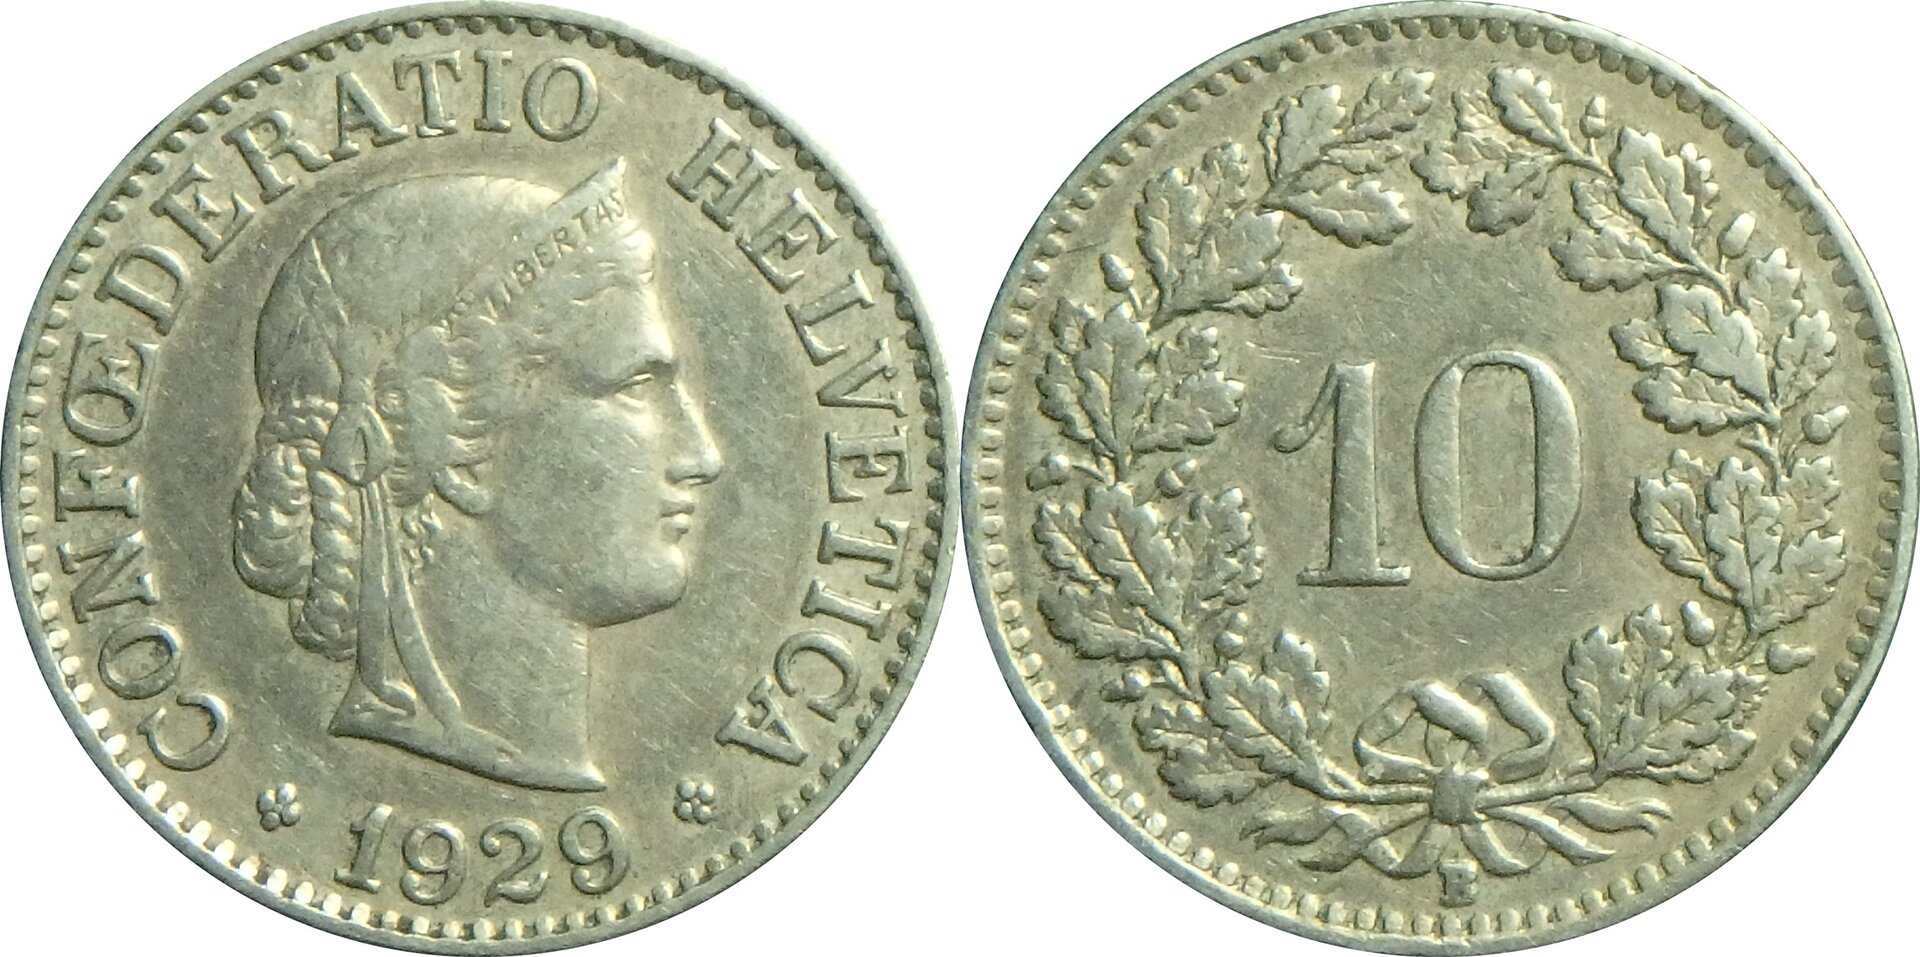 1929 CH 10 r.jpg